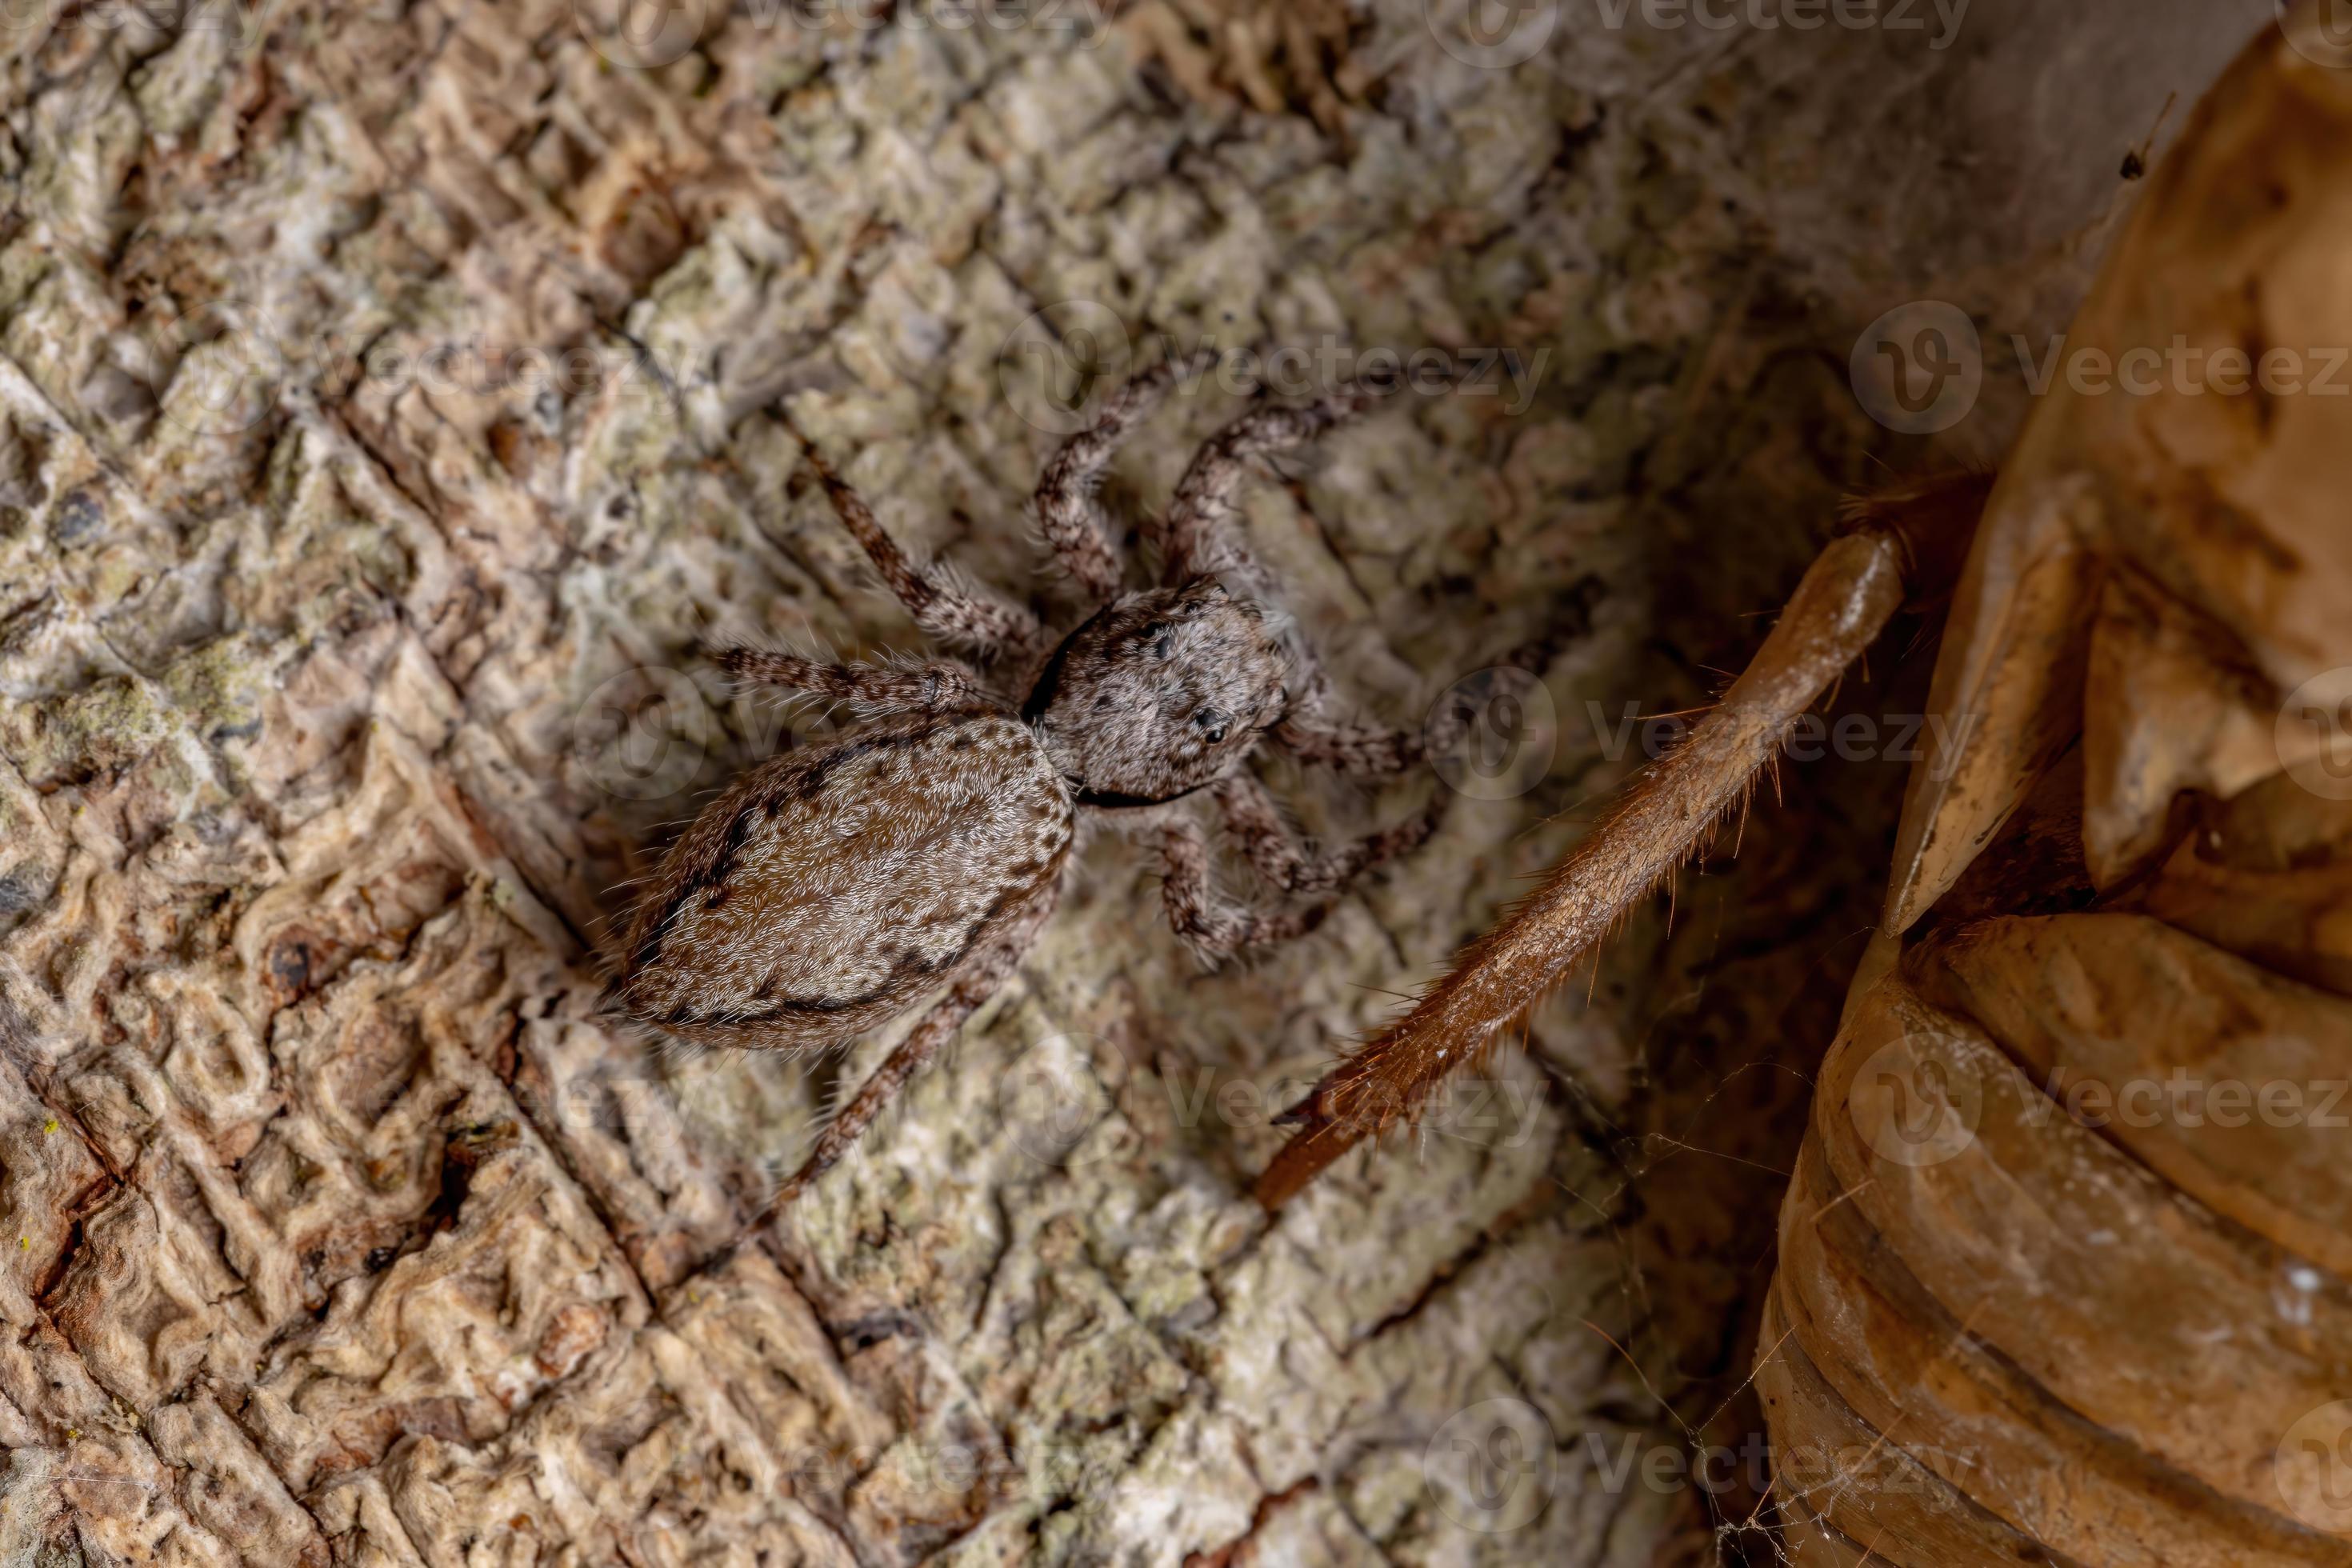 fêmea adulta de aranha saltadora em um tronco de árvore foto